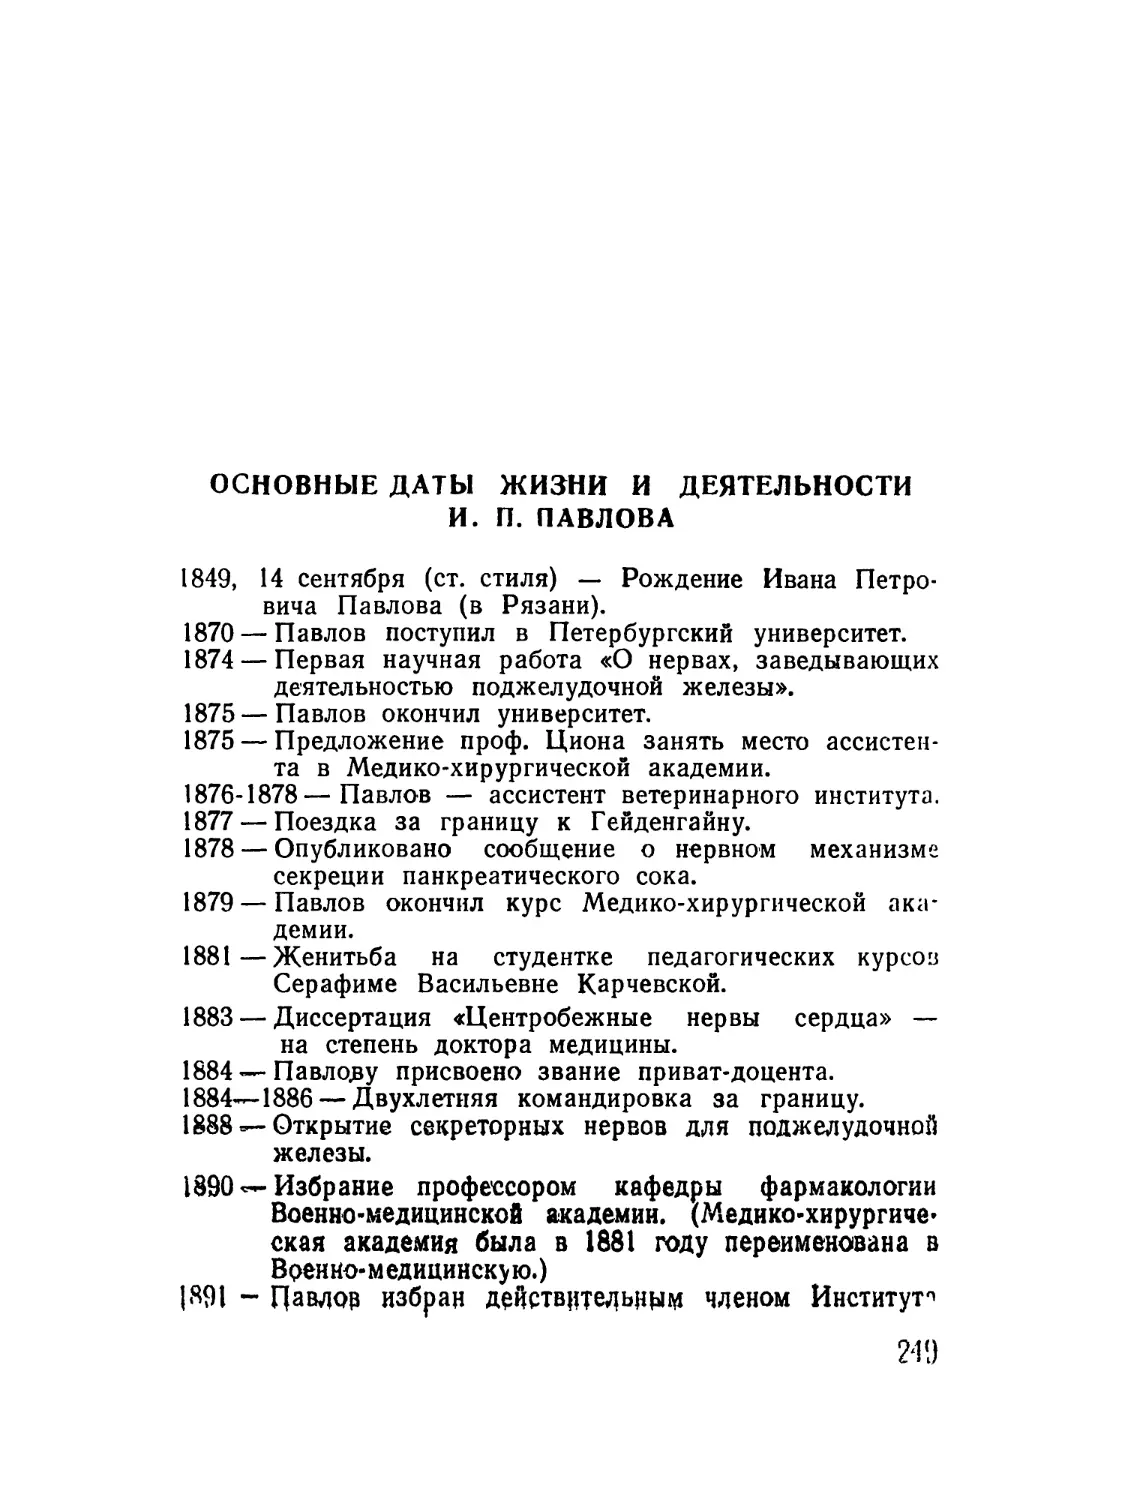 Основные даты жизни и деятельности И. П. Павлова